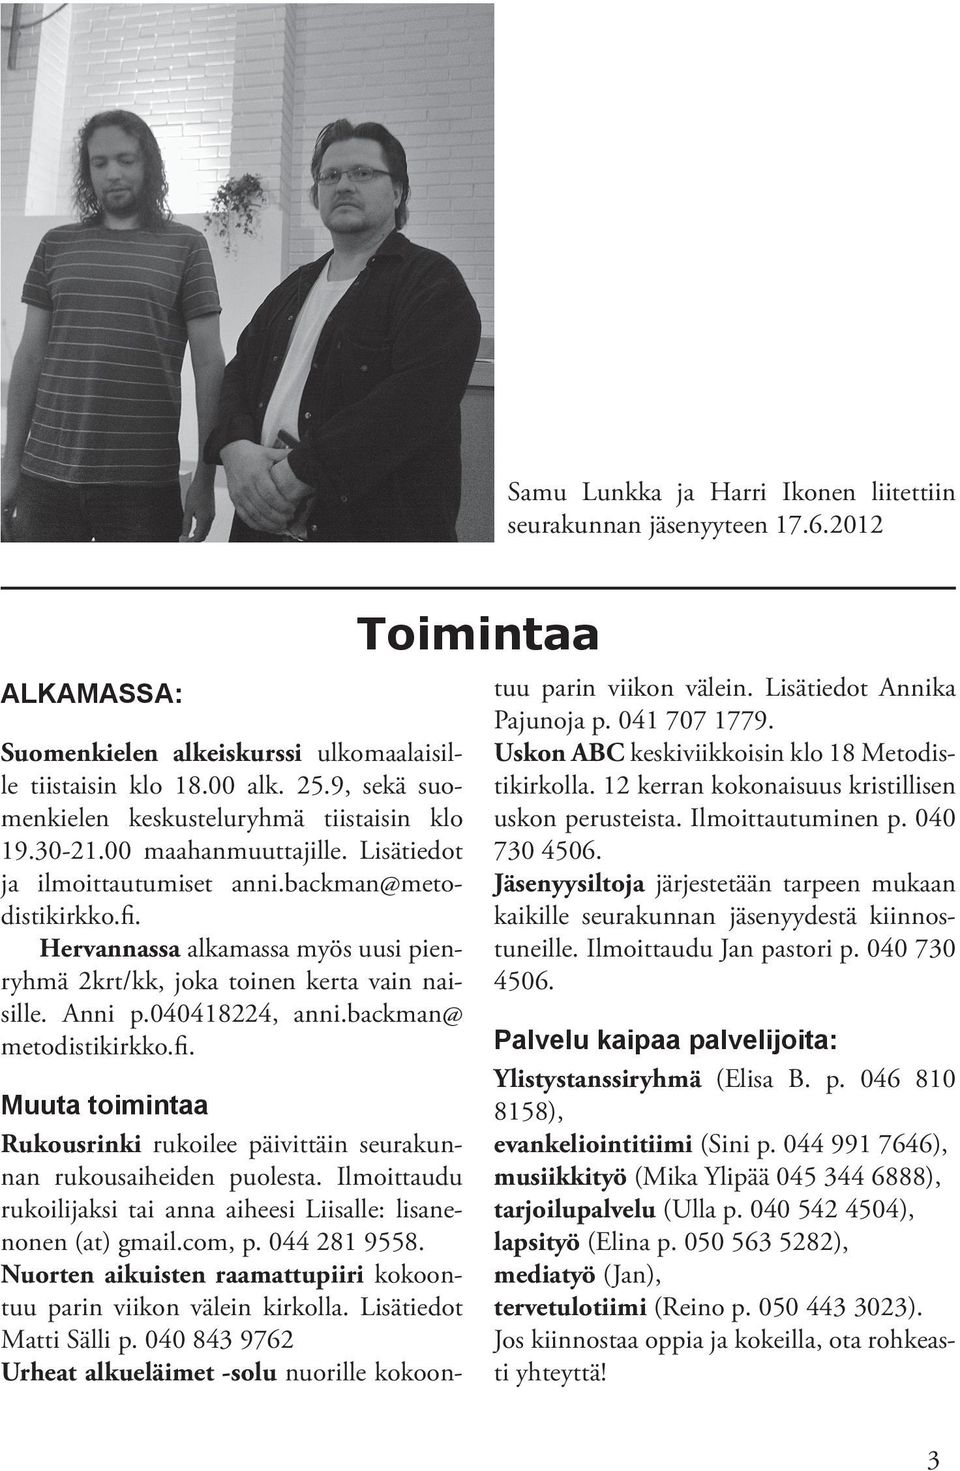 Hervannassa alkamassa myös uusi pienryhmä 2krt/kk, joka toinen kerta vain naisille. Anni p.040418224, anni.backman@ metodistikirkko.fi.